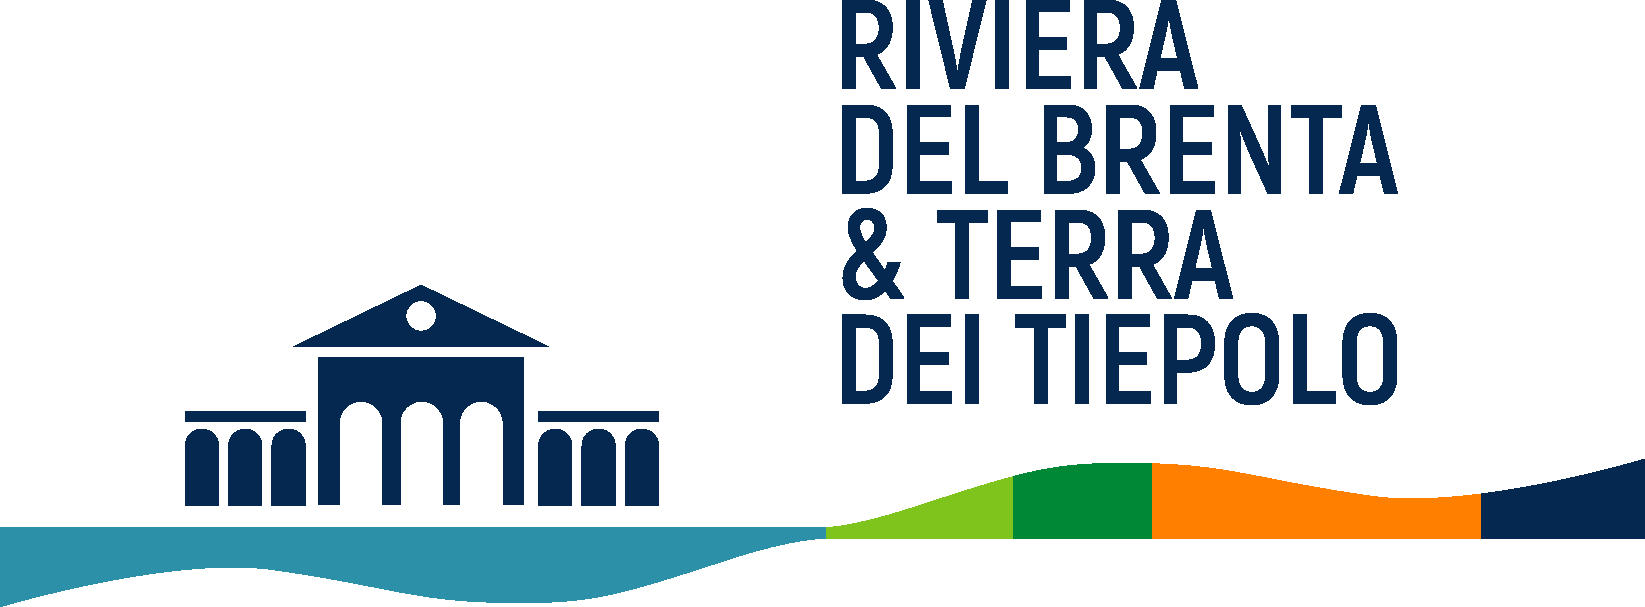 Riviera Del Brenta e Terra Dei Tiepolo affidano a Tend dopo gara lo sviluppo della brand image